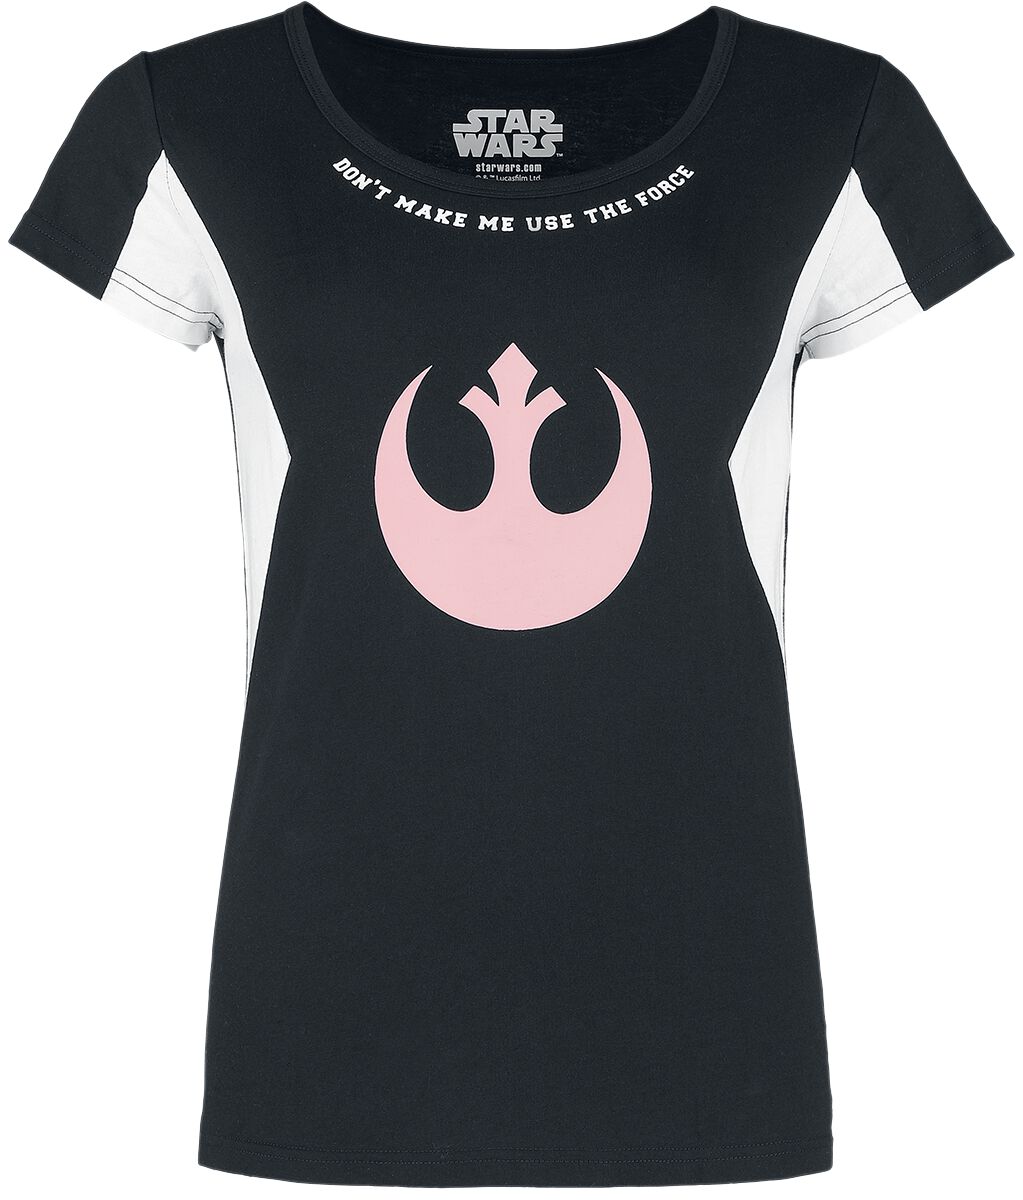 Star Wars T-Shirt - S bis M - für Damen - Größe M - schwarz/weiß  - EMP exklusives Merchandise!